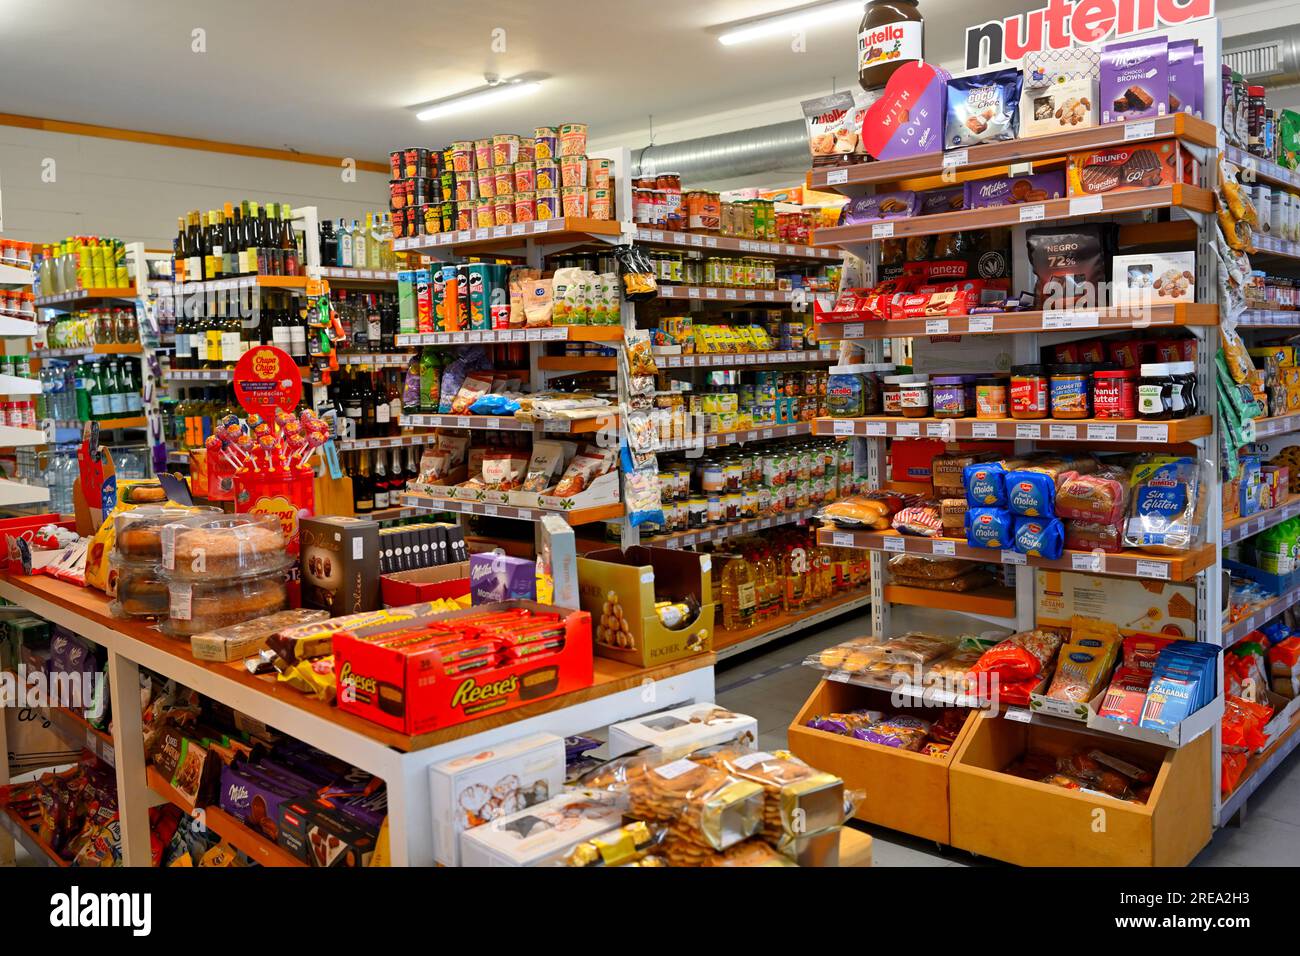 All'interno di un piccolo supermercato (Mini Mercado) con scaffali riforniti di alimenti, Portogallo Foto Stock